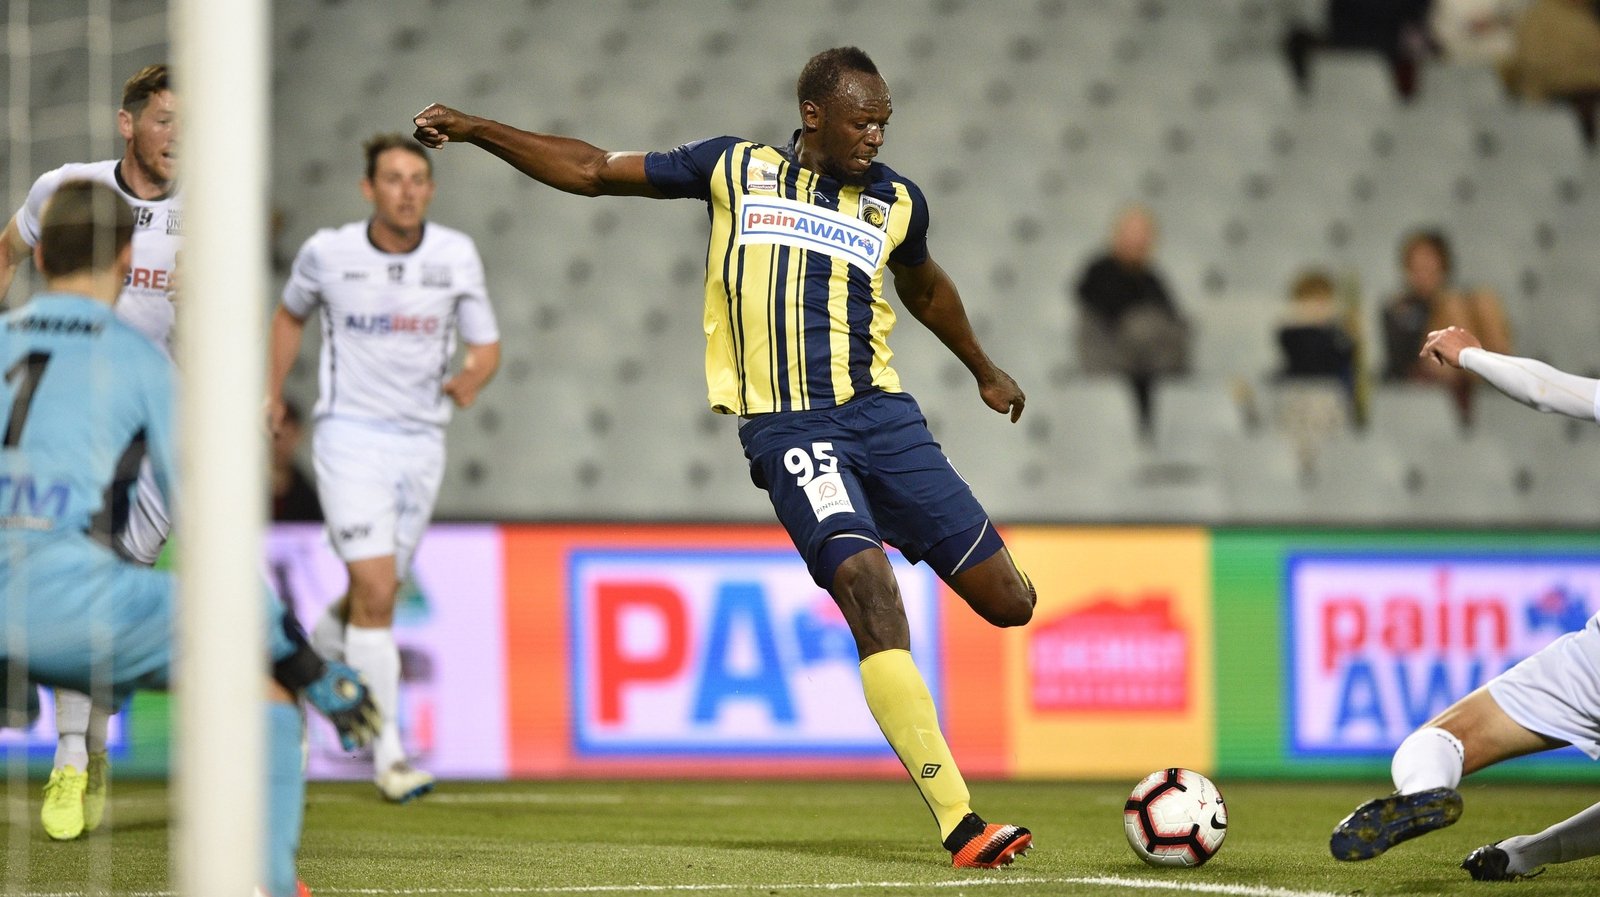 Usain Bolt football trial ends at A-League club